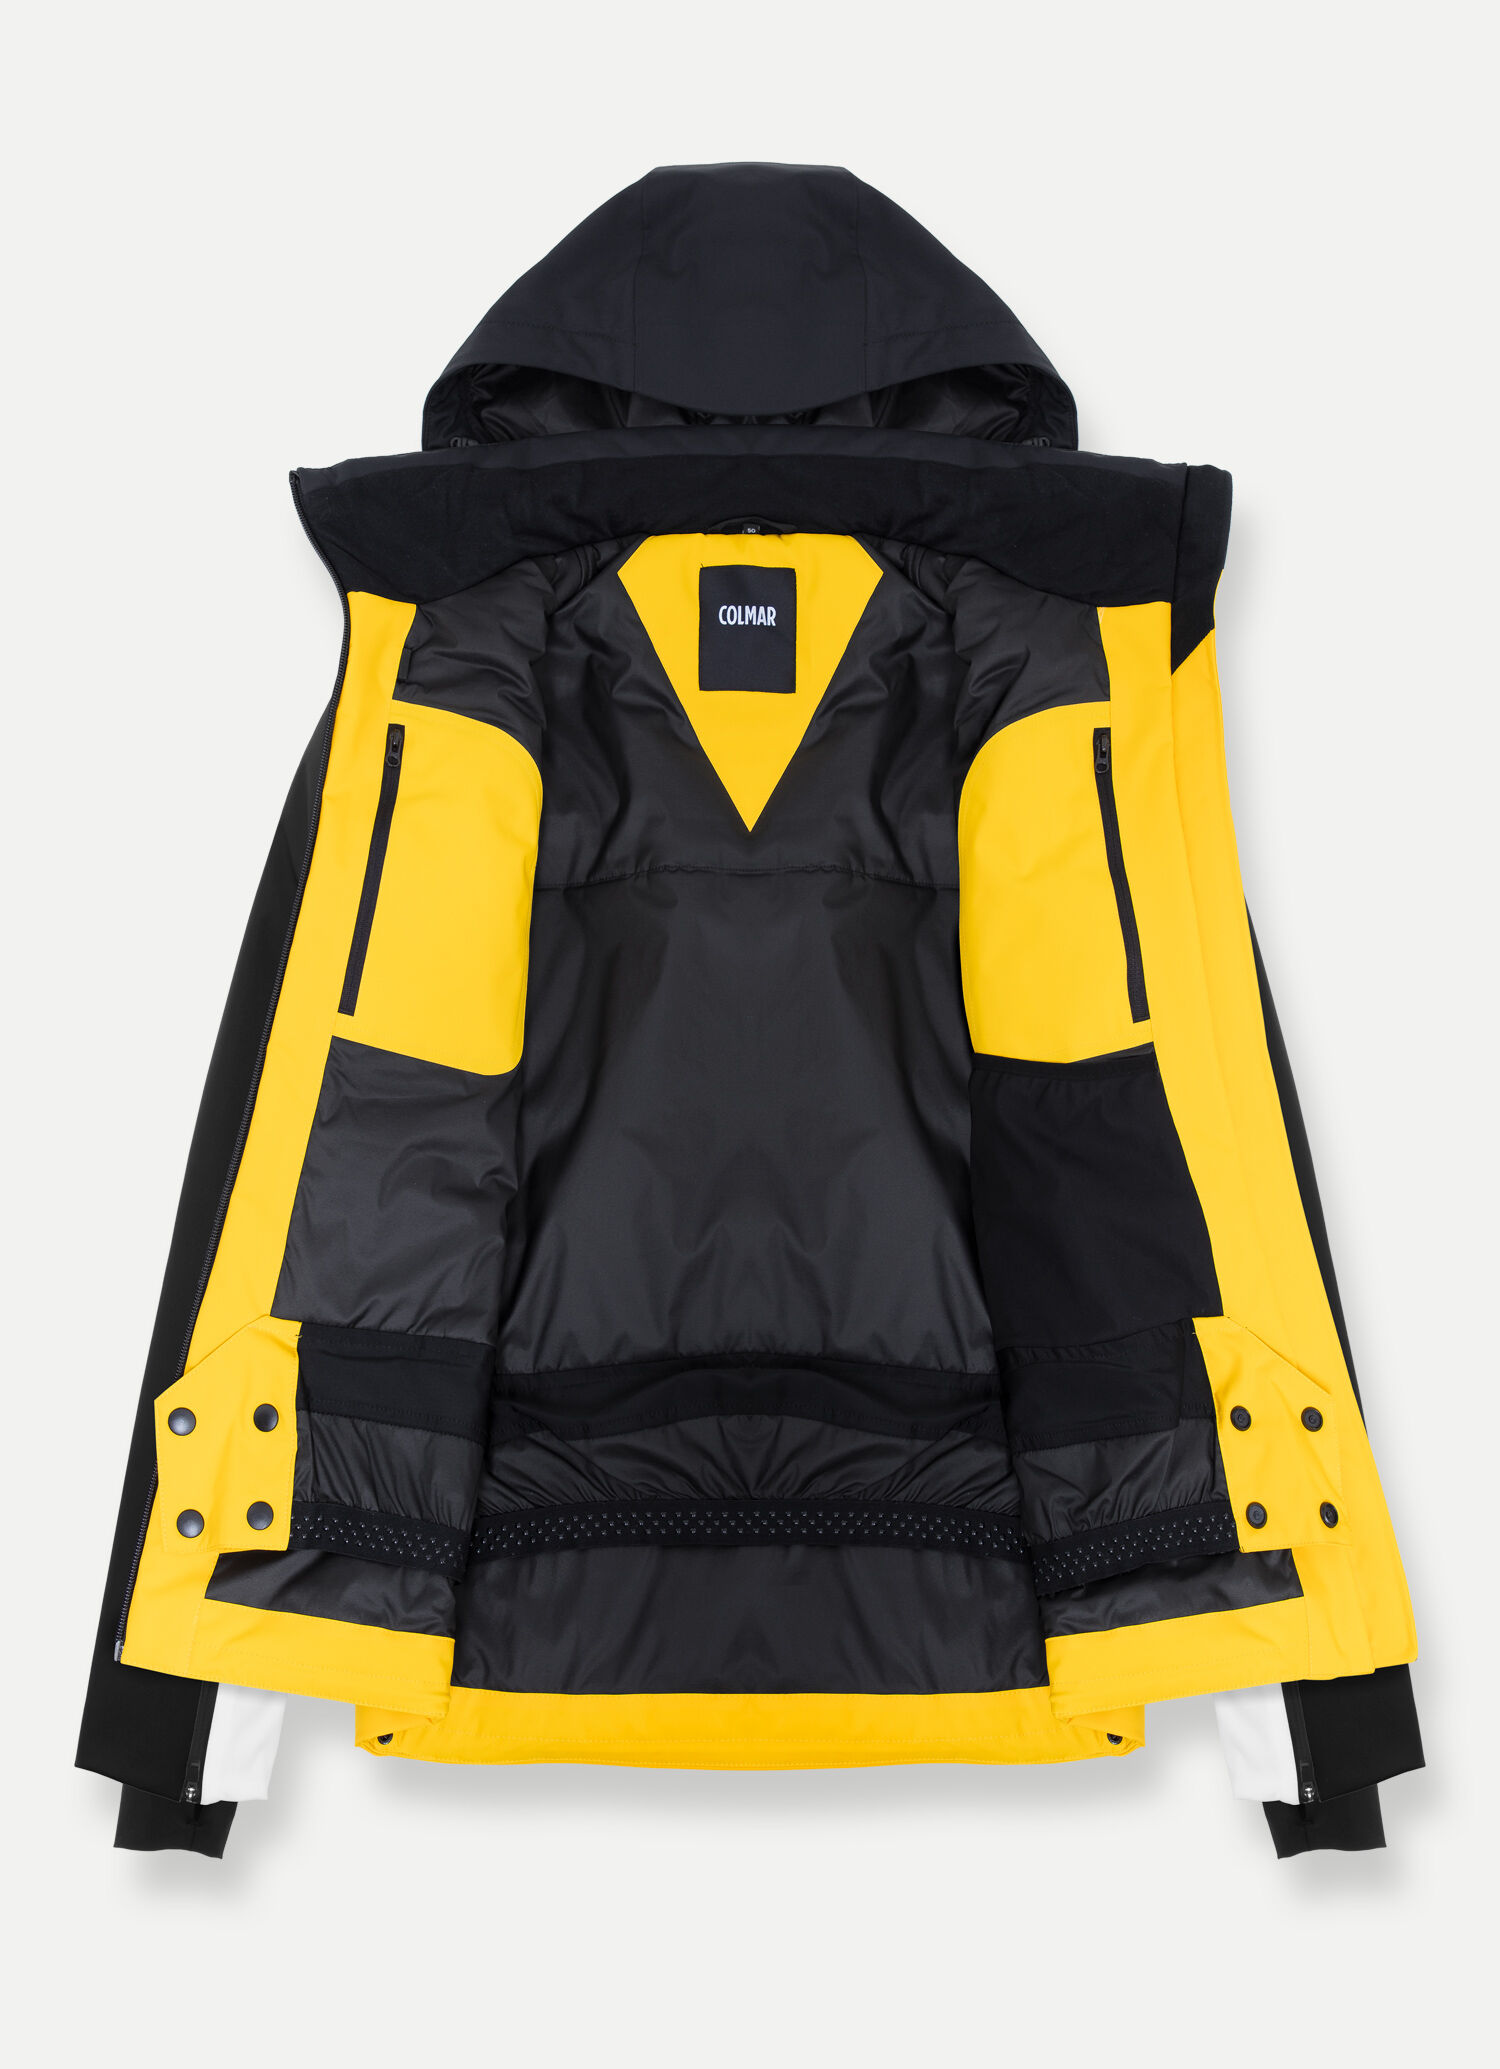 Arctix Ski Jacket Cheapest